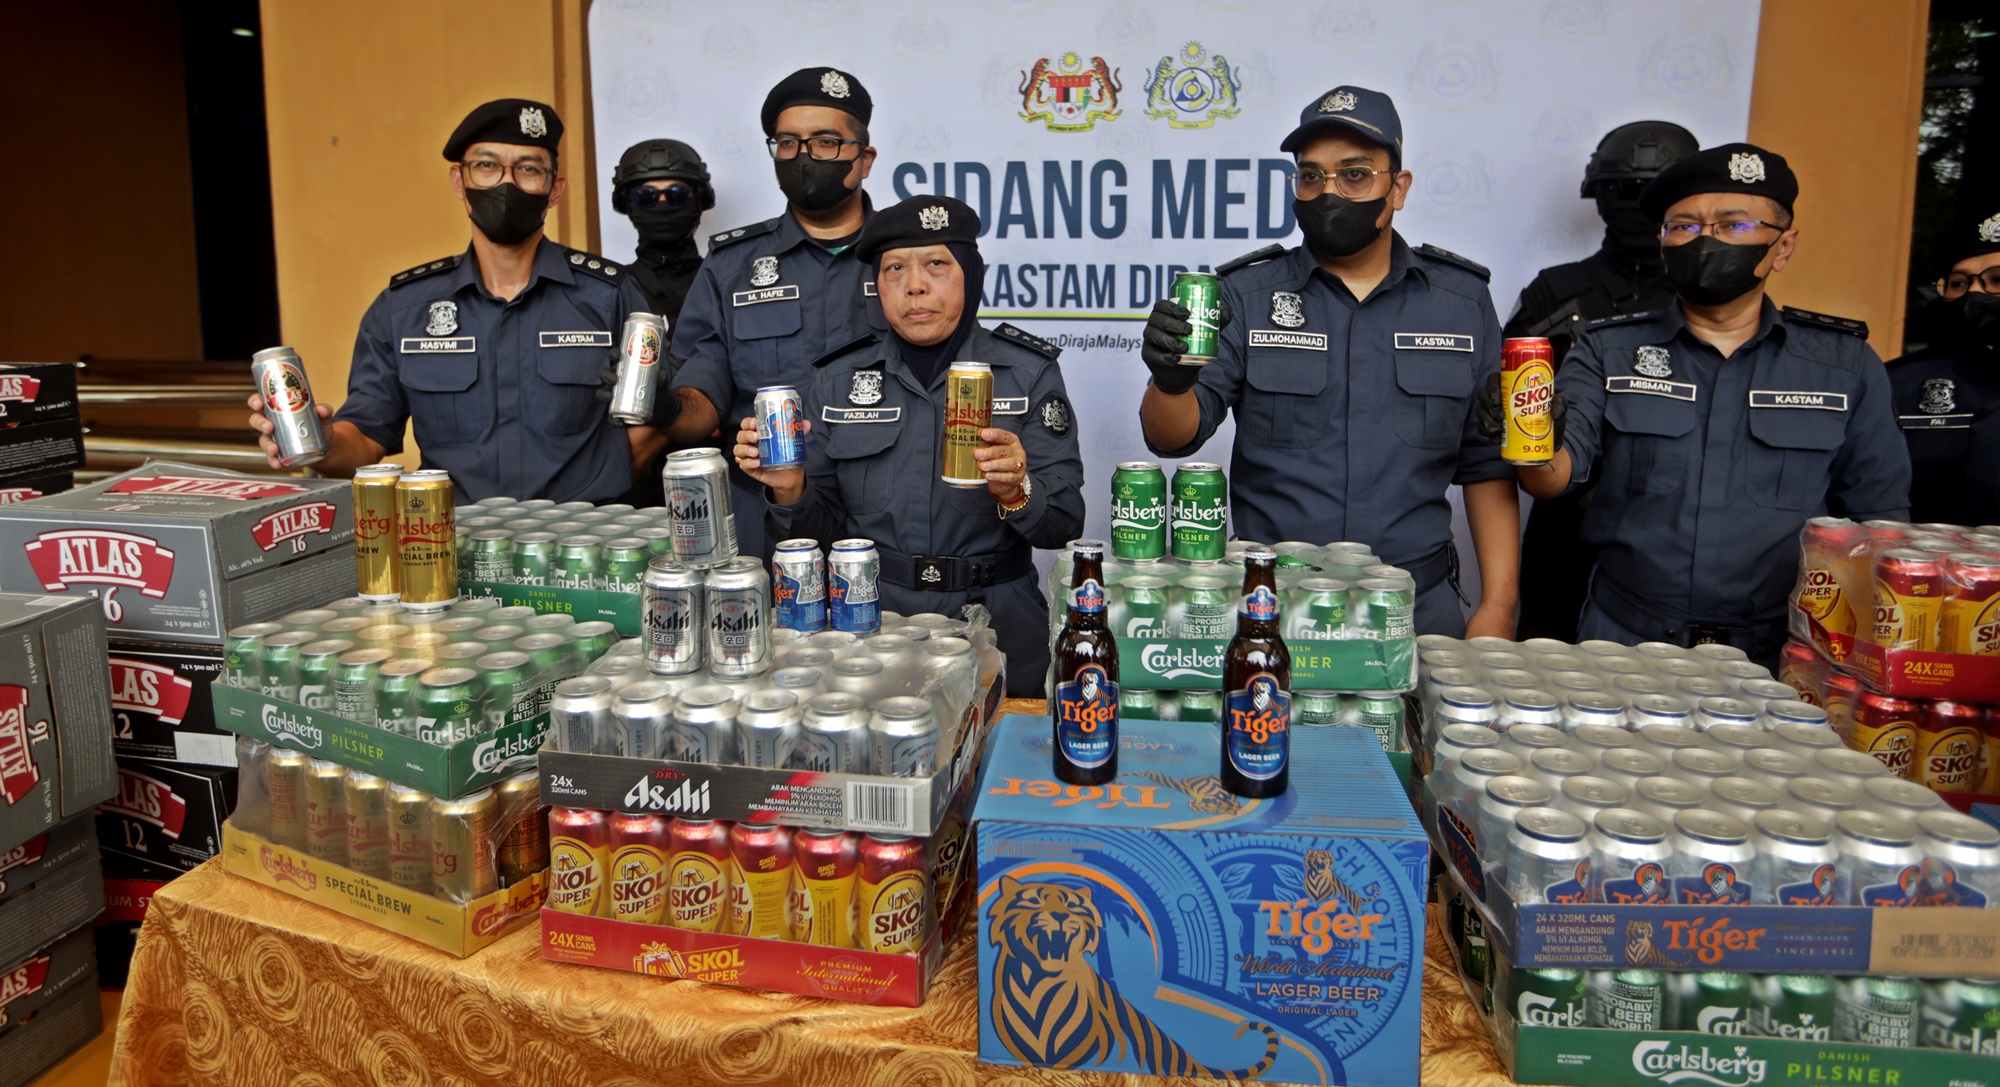 关税局行动起逃税逾RM68万走私酒·7人偷偷落跑